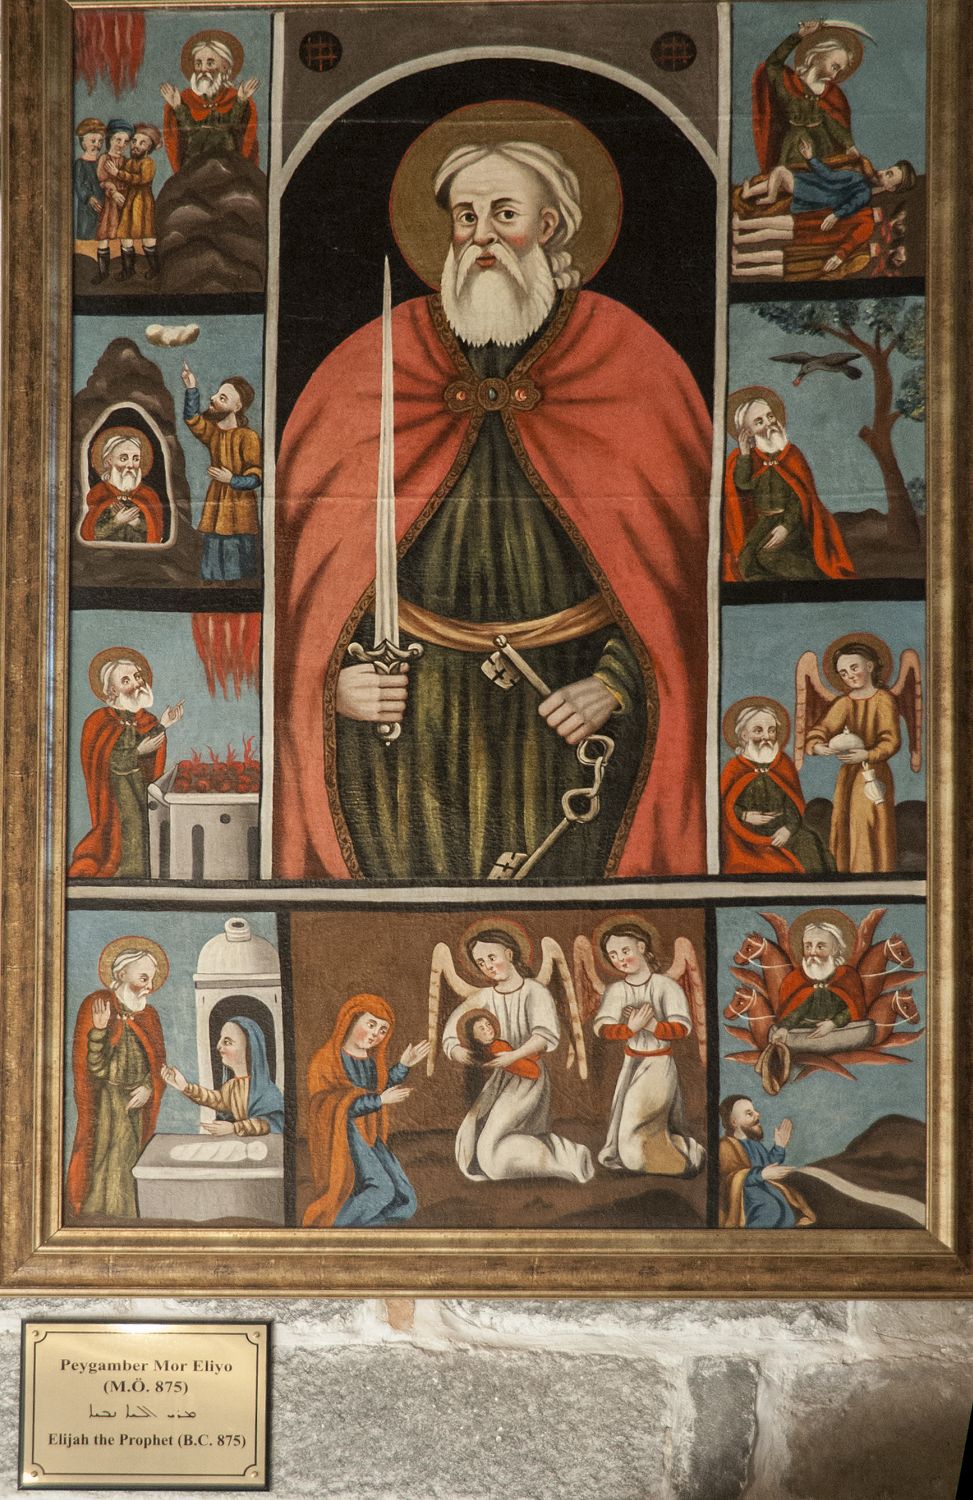 Image of Saint Elijah the Prophet.